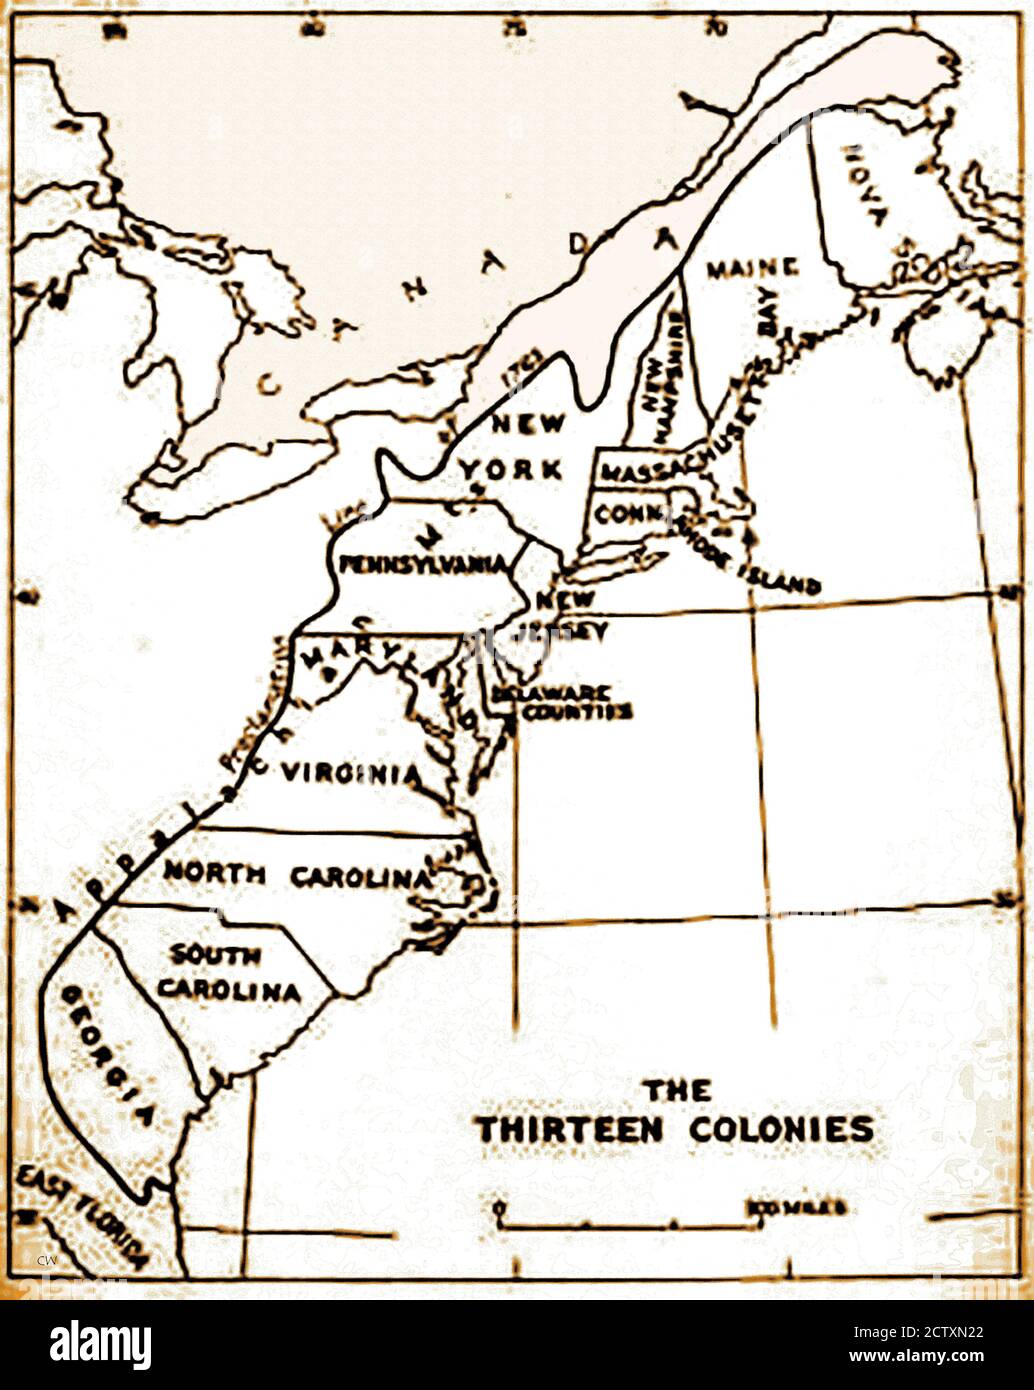 Una mappa storica delle 13 colonie originali degli Stati Uniti. La Spagna rivendicò tutta la terra dal fiume Mississippi all'Oceano Pacifico, più il Golfo del Messico. Il trattato di Parigi creò una nuova nazione nel 1783 e raddoppiò le dimensioni delle 13 colonie originali, estendendo i confini fino al fiume Mississippi. Delaware (uno stato schiavo) è stato il 1 ° stato a ratificare la Costituzione degli Stati Uniti nel 1787, la Pennsylvania è stato il 2 ° dicembre 1787, dichiarandosi uno 'Stato libero'. Giorni dopo Ndew Jersey seguì l'esempio. Foto Stock